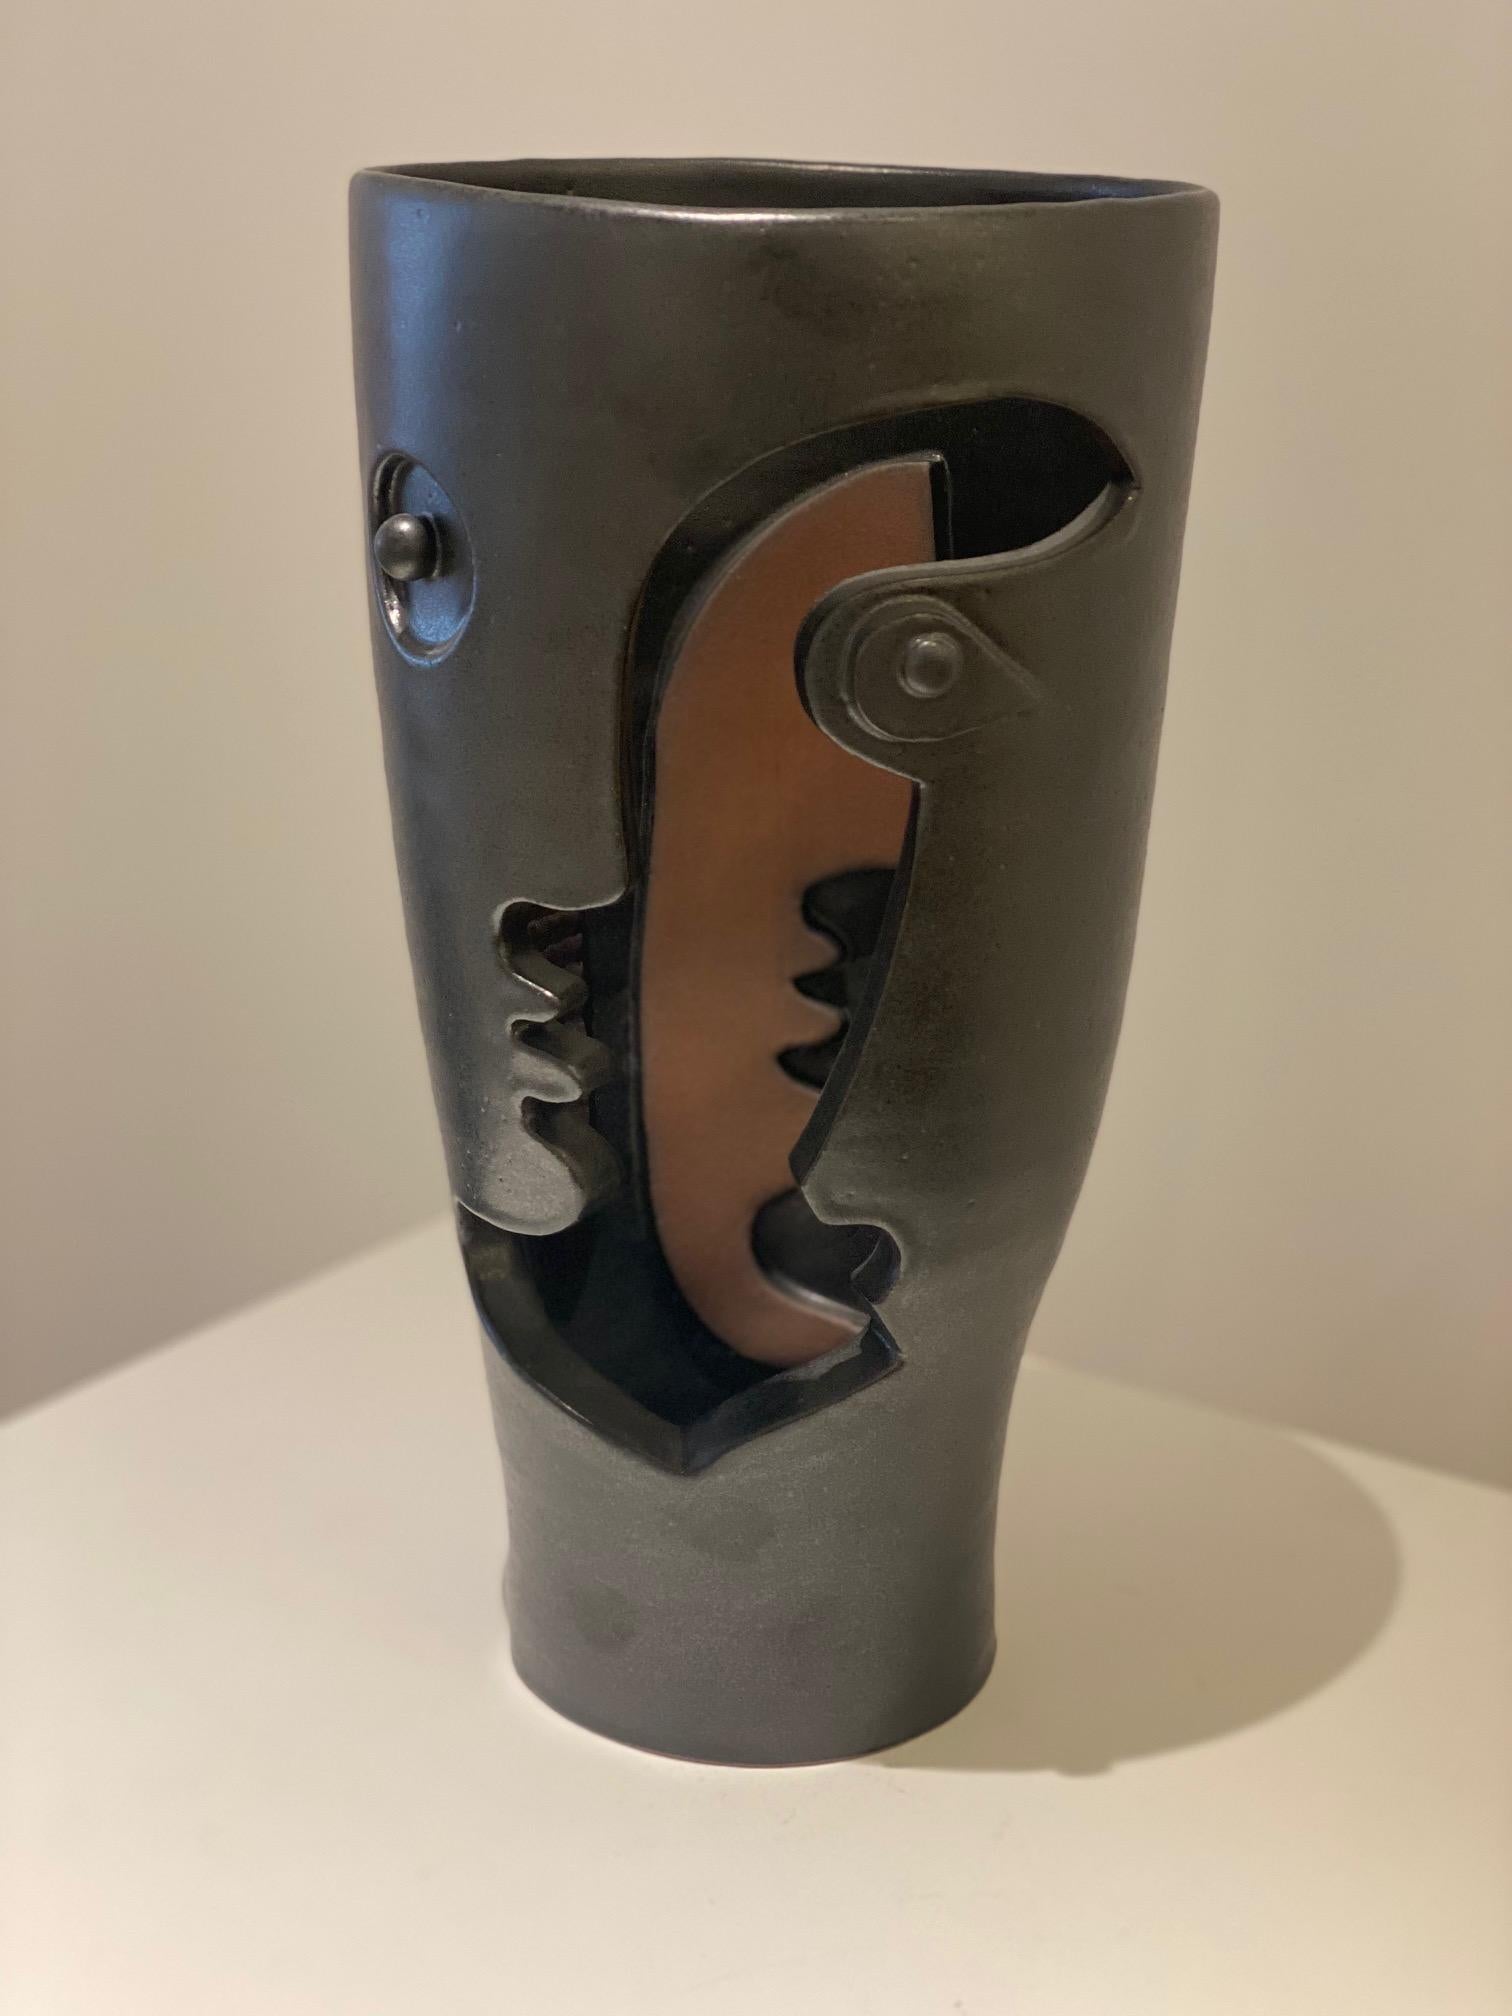 Dekorative Skulptur Vase in Ton mit stilisiertem Gesicht, handgefertigt und signiert von Französisch Keramiker Dalo.
Steingut mit satinschwarzer Emaille. Ein Unikat.
Maße: H 30 cm x L 15 cm.

